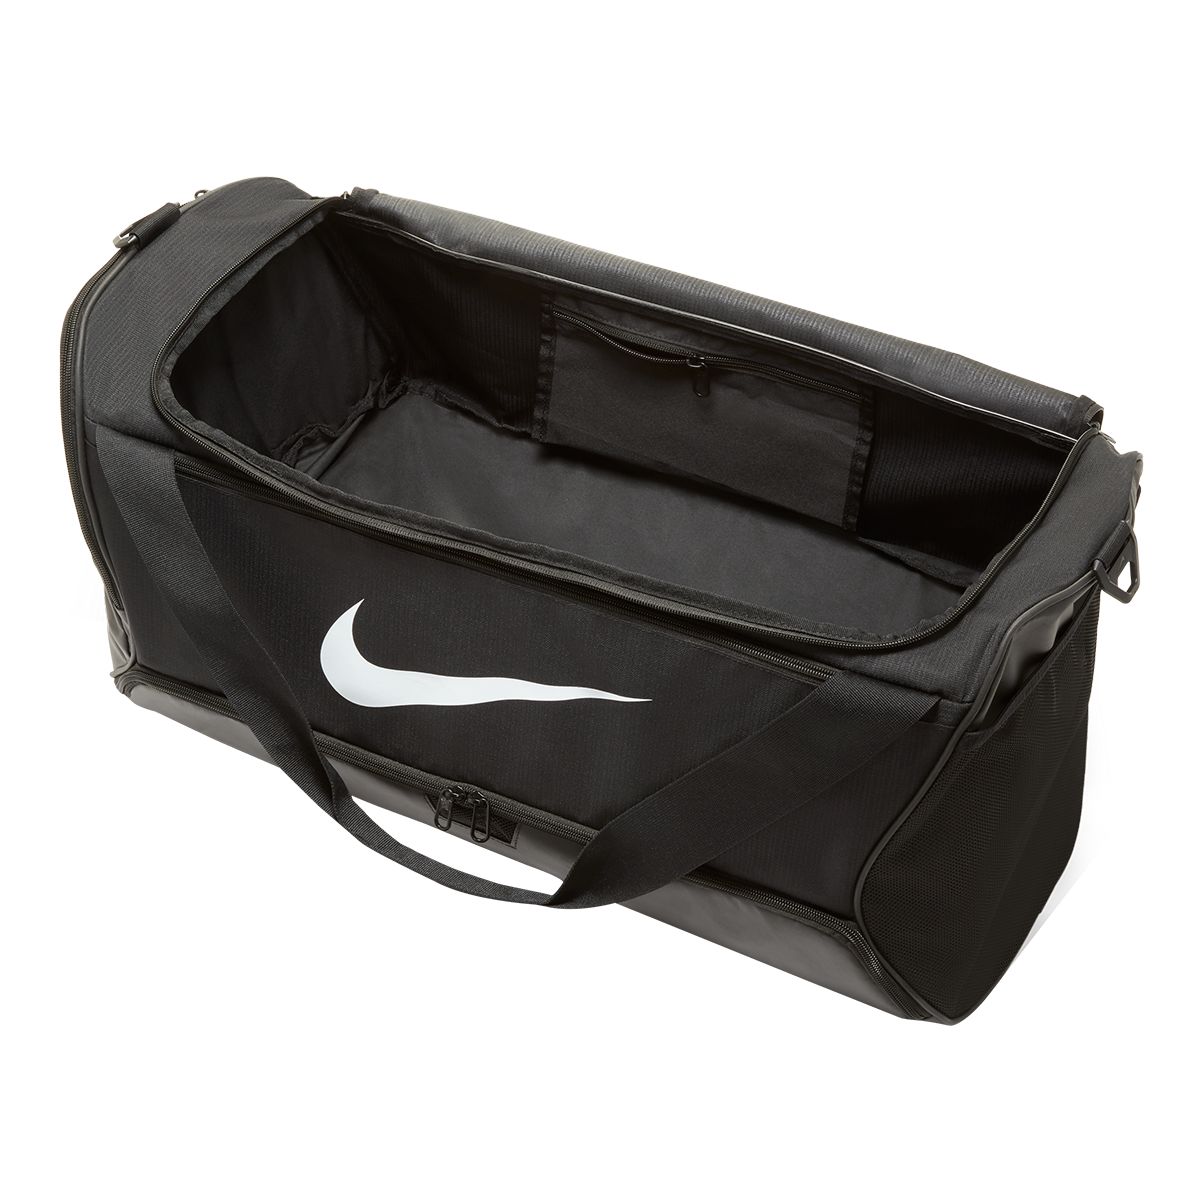 Nike Men's Brasilia Duffel Bag